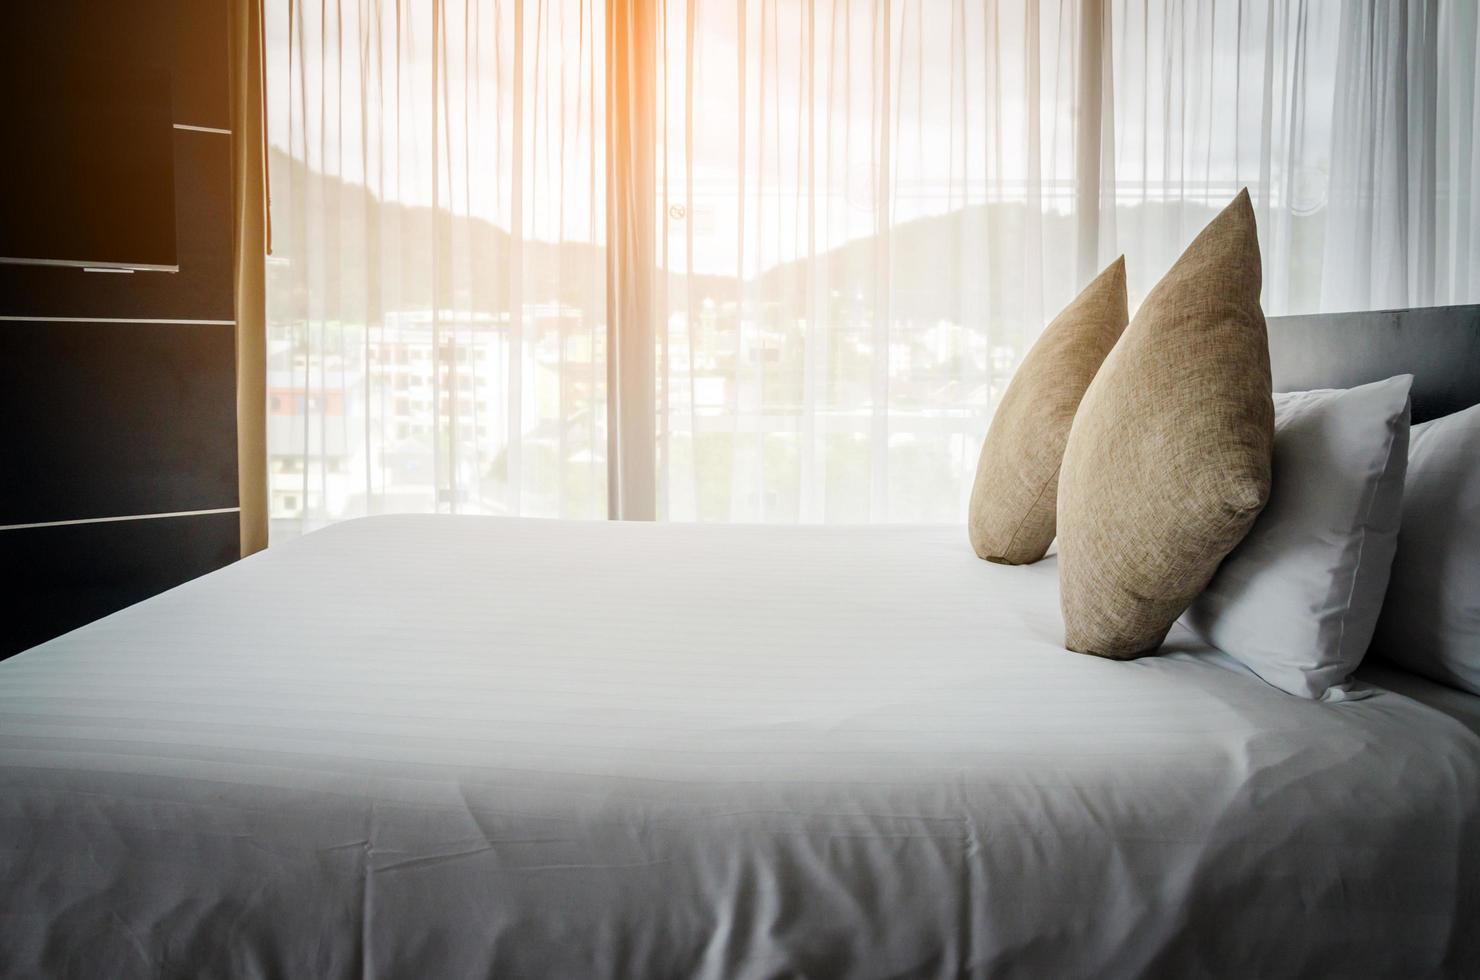 travesseiros em uma cama de hotel foto